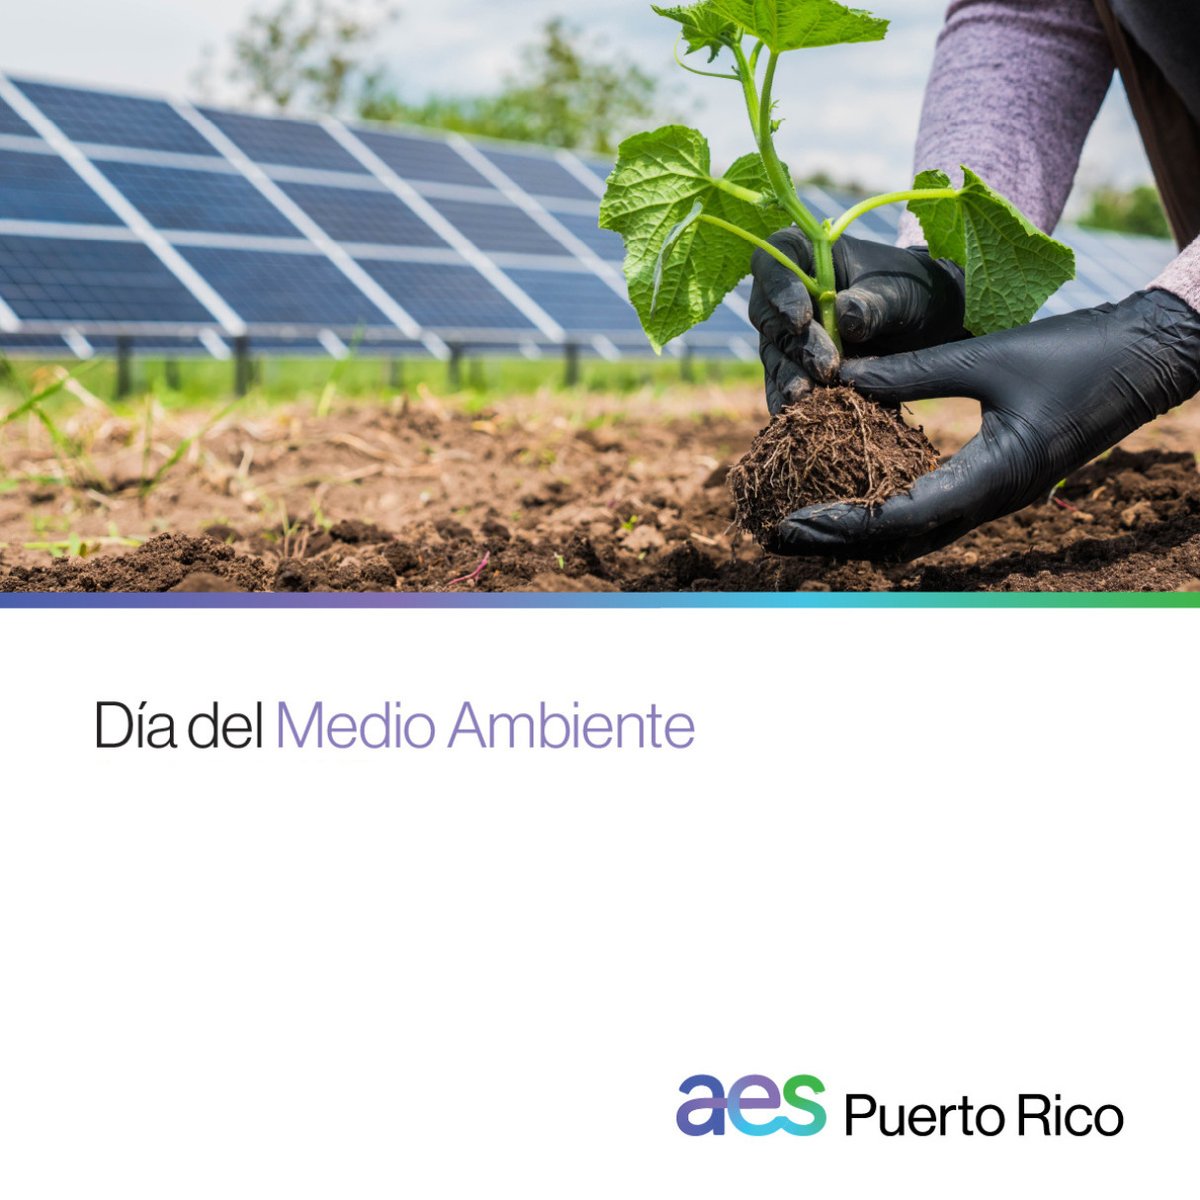 Durante el mes de junio se conmemora el #DíaDelMedioAmbiente. Seguimos apostando a la transición energética de Puerto Rico. ☀️ Entre sus beneficios se encuentran la sostenibilidad energética, ahorro de energía y reducción de emisiones dañinas al planeta. ​

#EnergíaSostenible